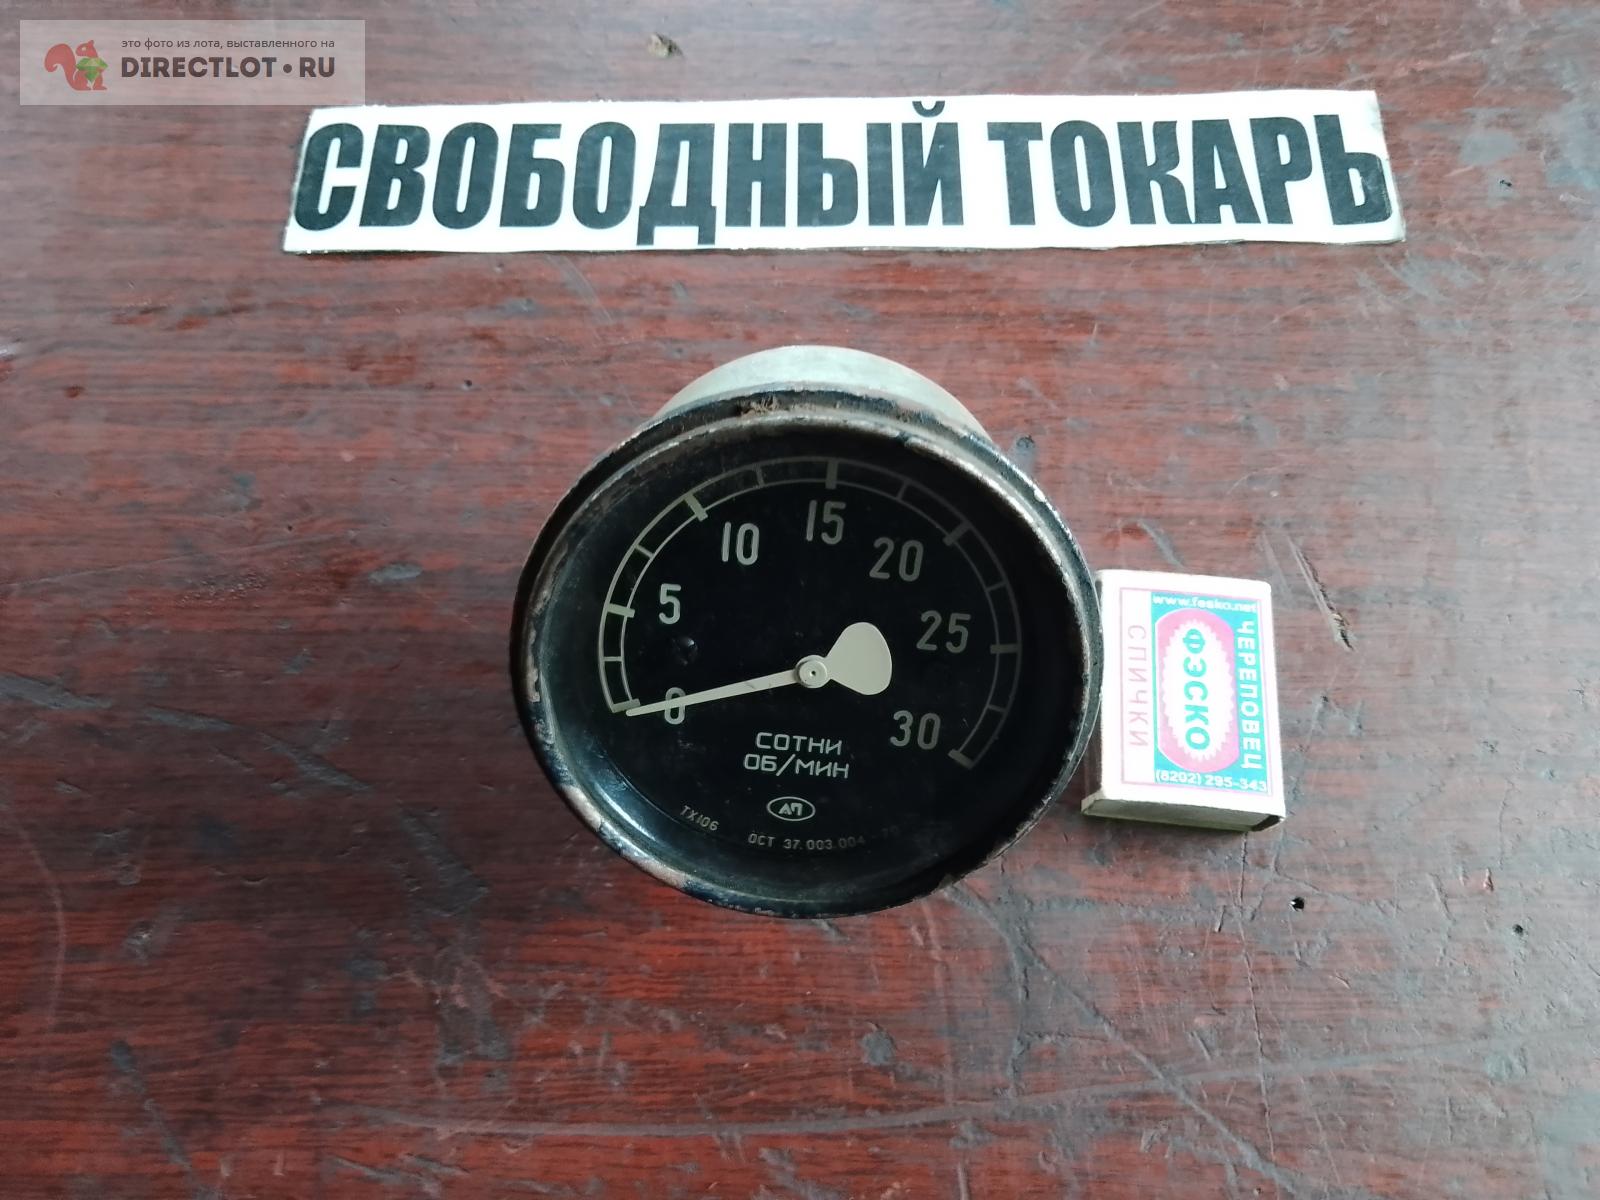  от советского авто.  в Иркутске цена 300 Р на DIRECTLOT .